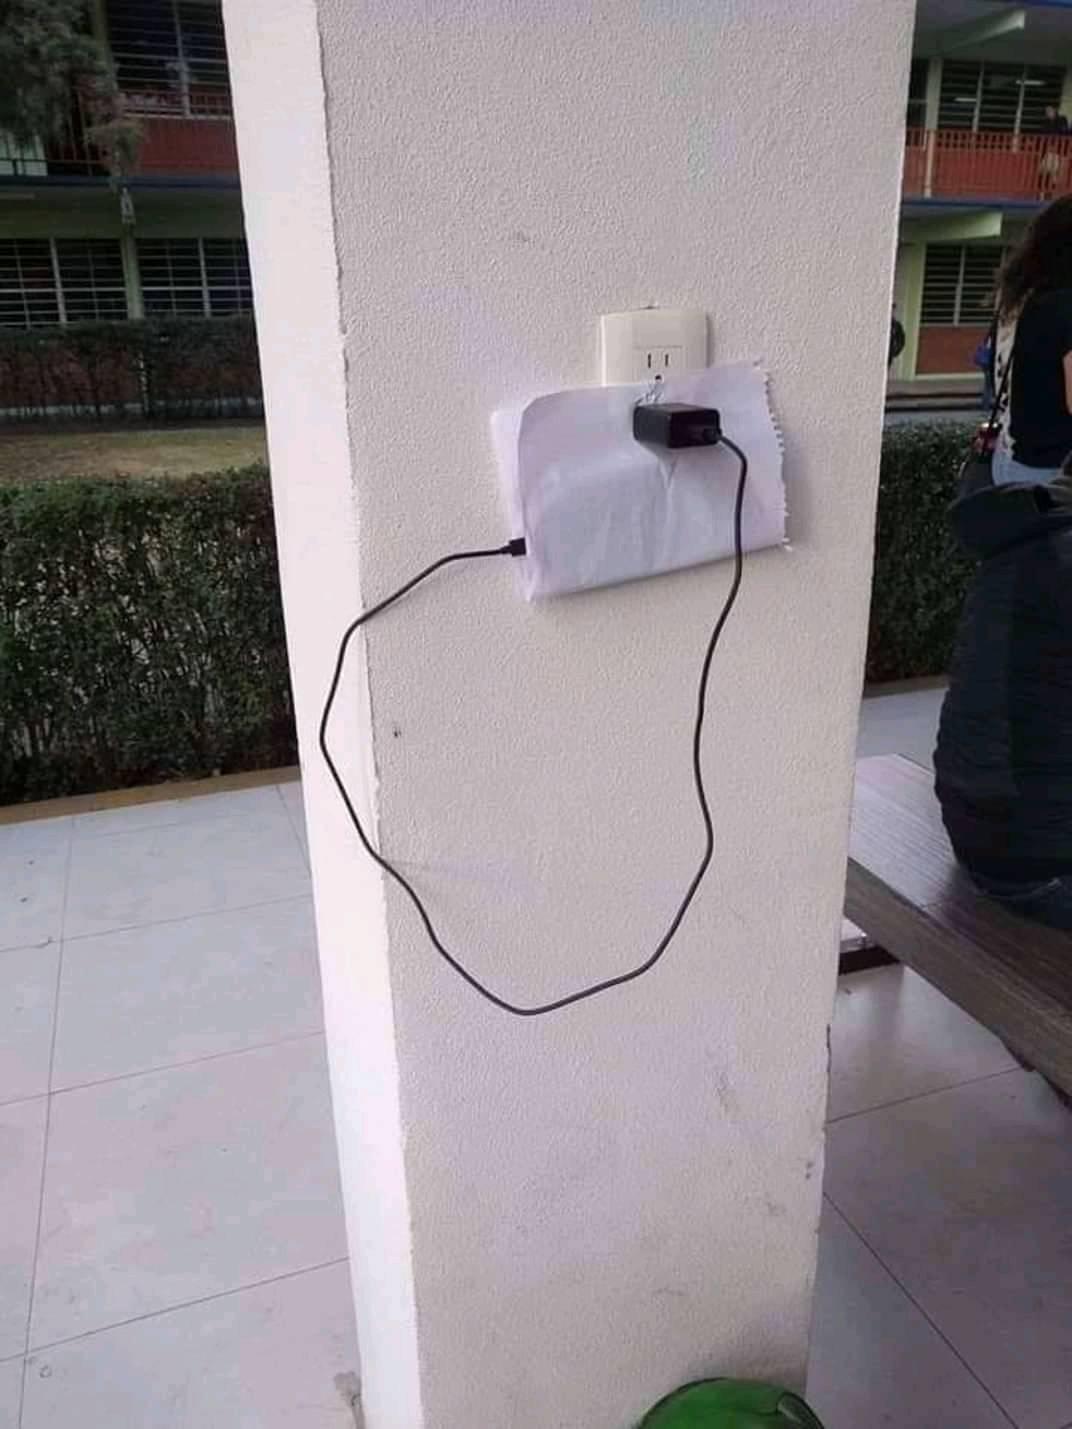 Astuce pour recharger son téléphone sur une prise en hauteur